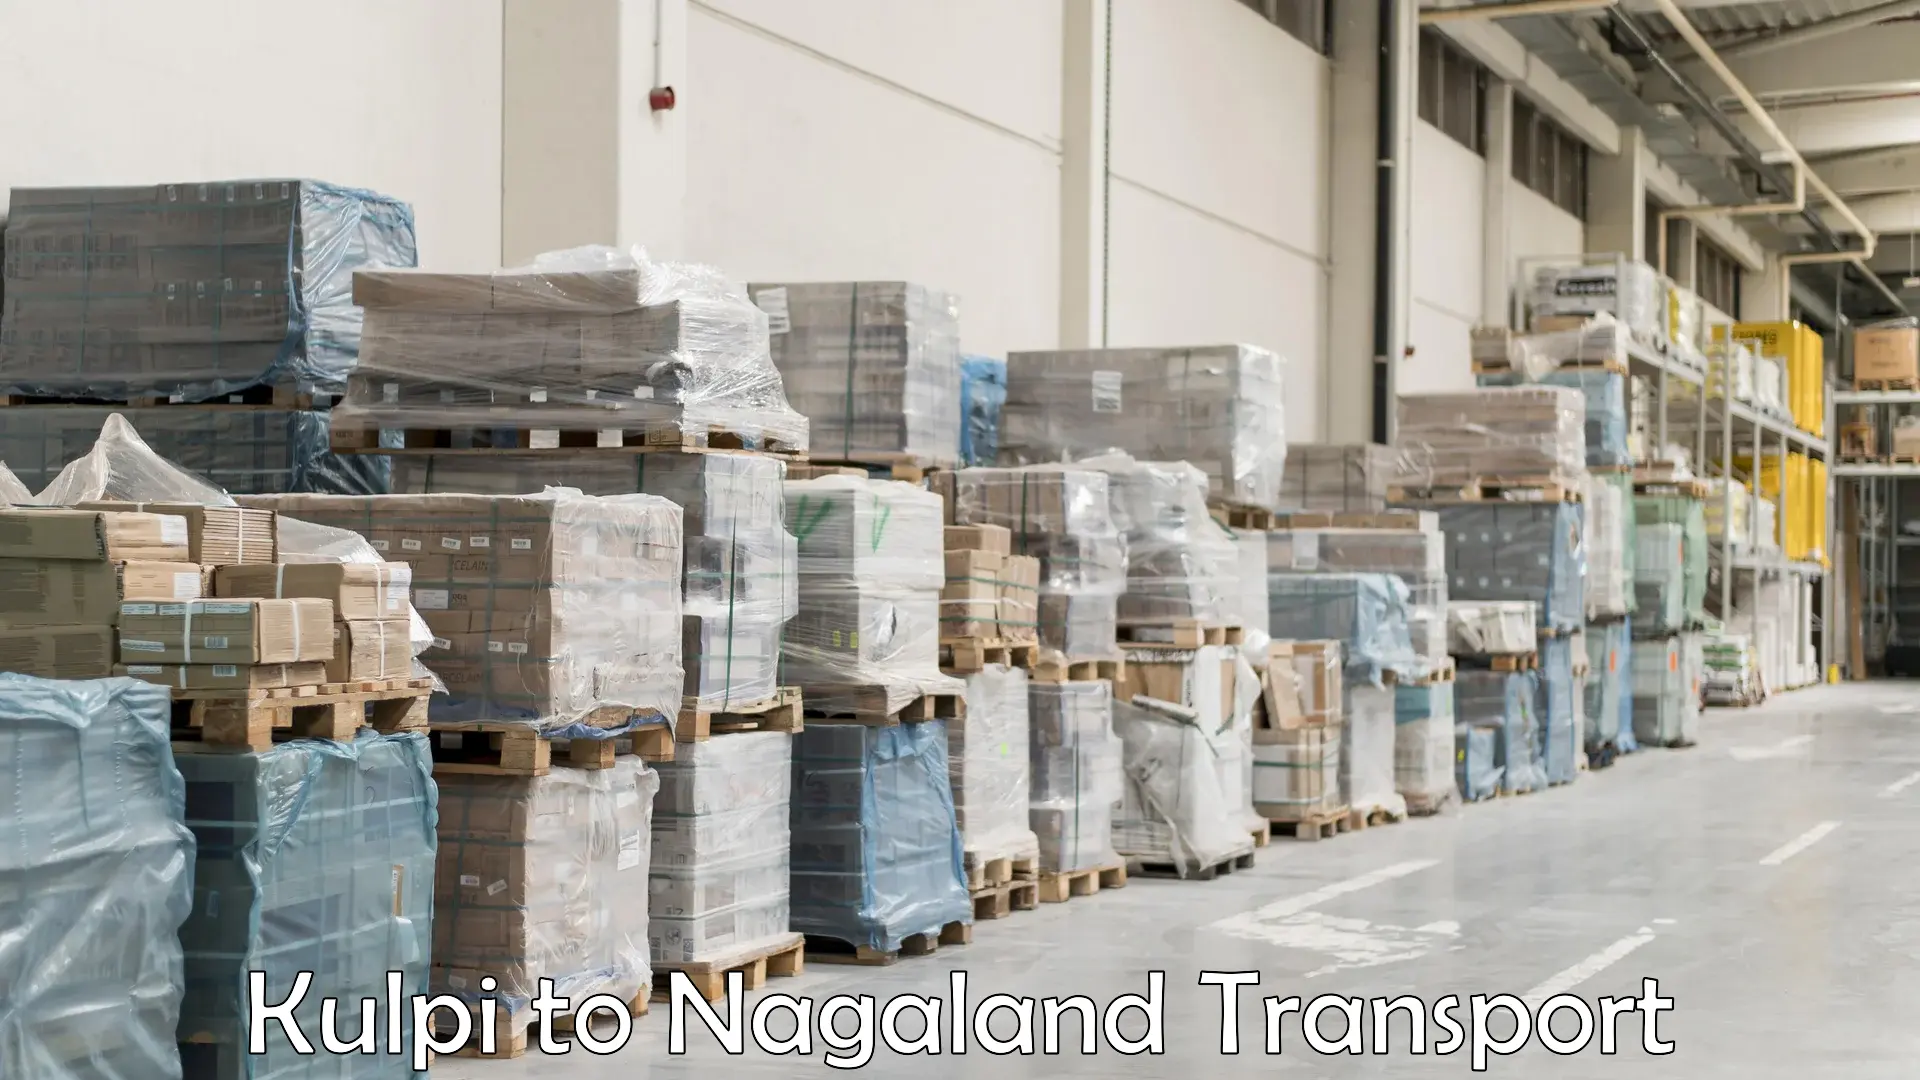 Nearest transport service Kulpi to Nagaland